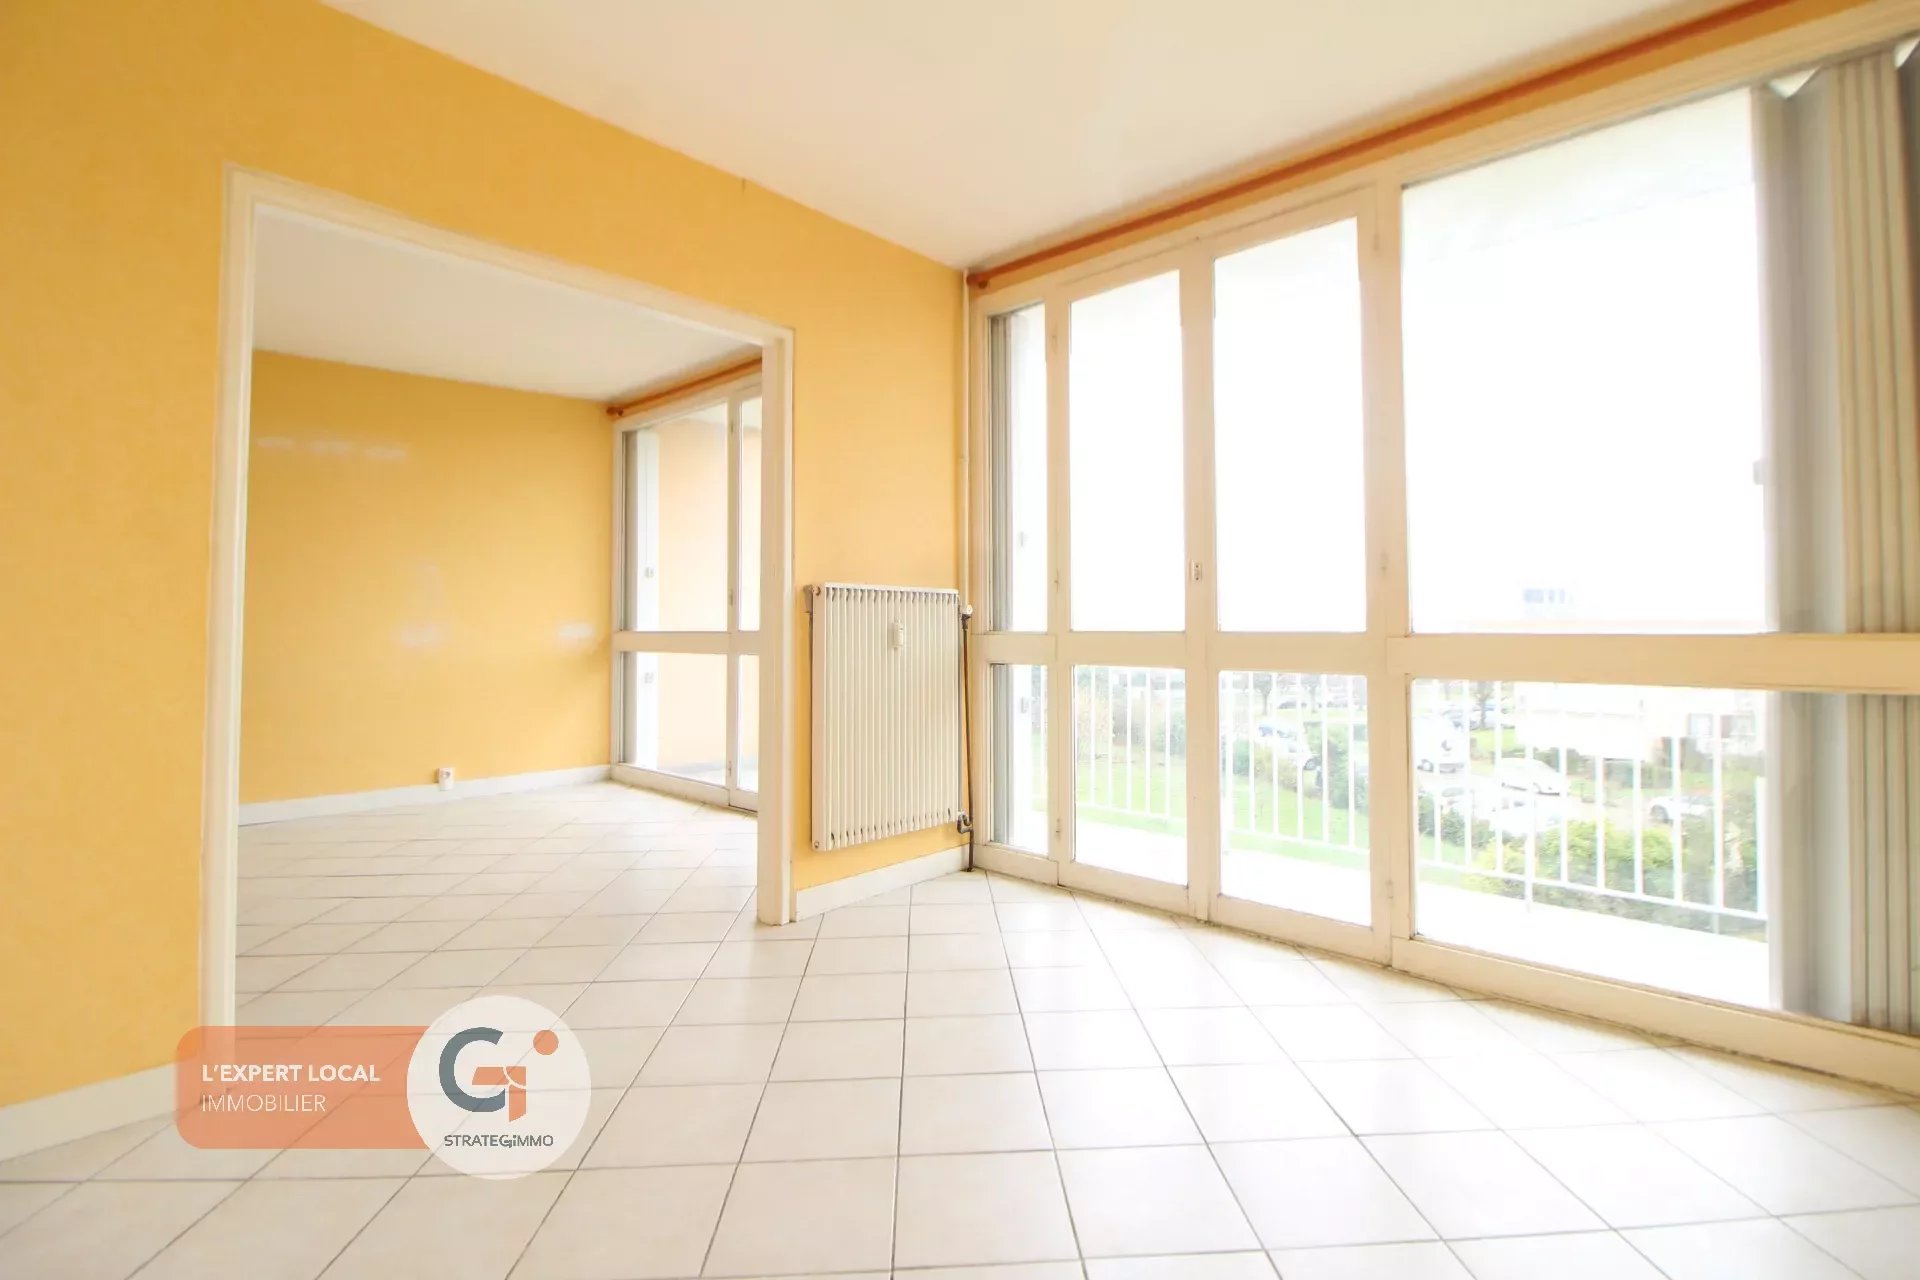 Vente Appartement 62m² à Gaillon (27600) - Rivedroite Immobilier